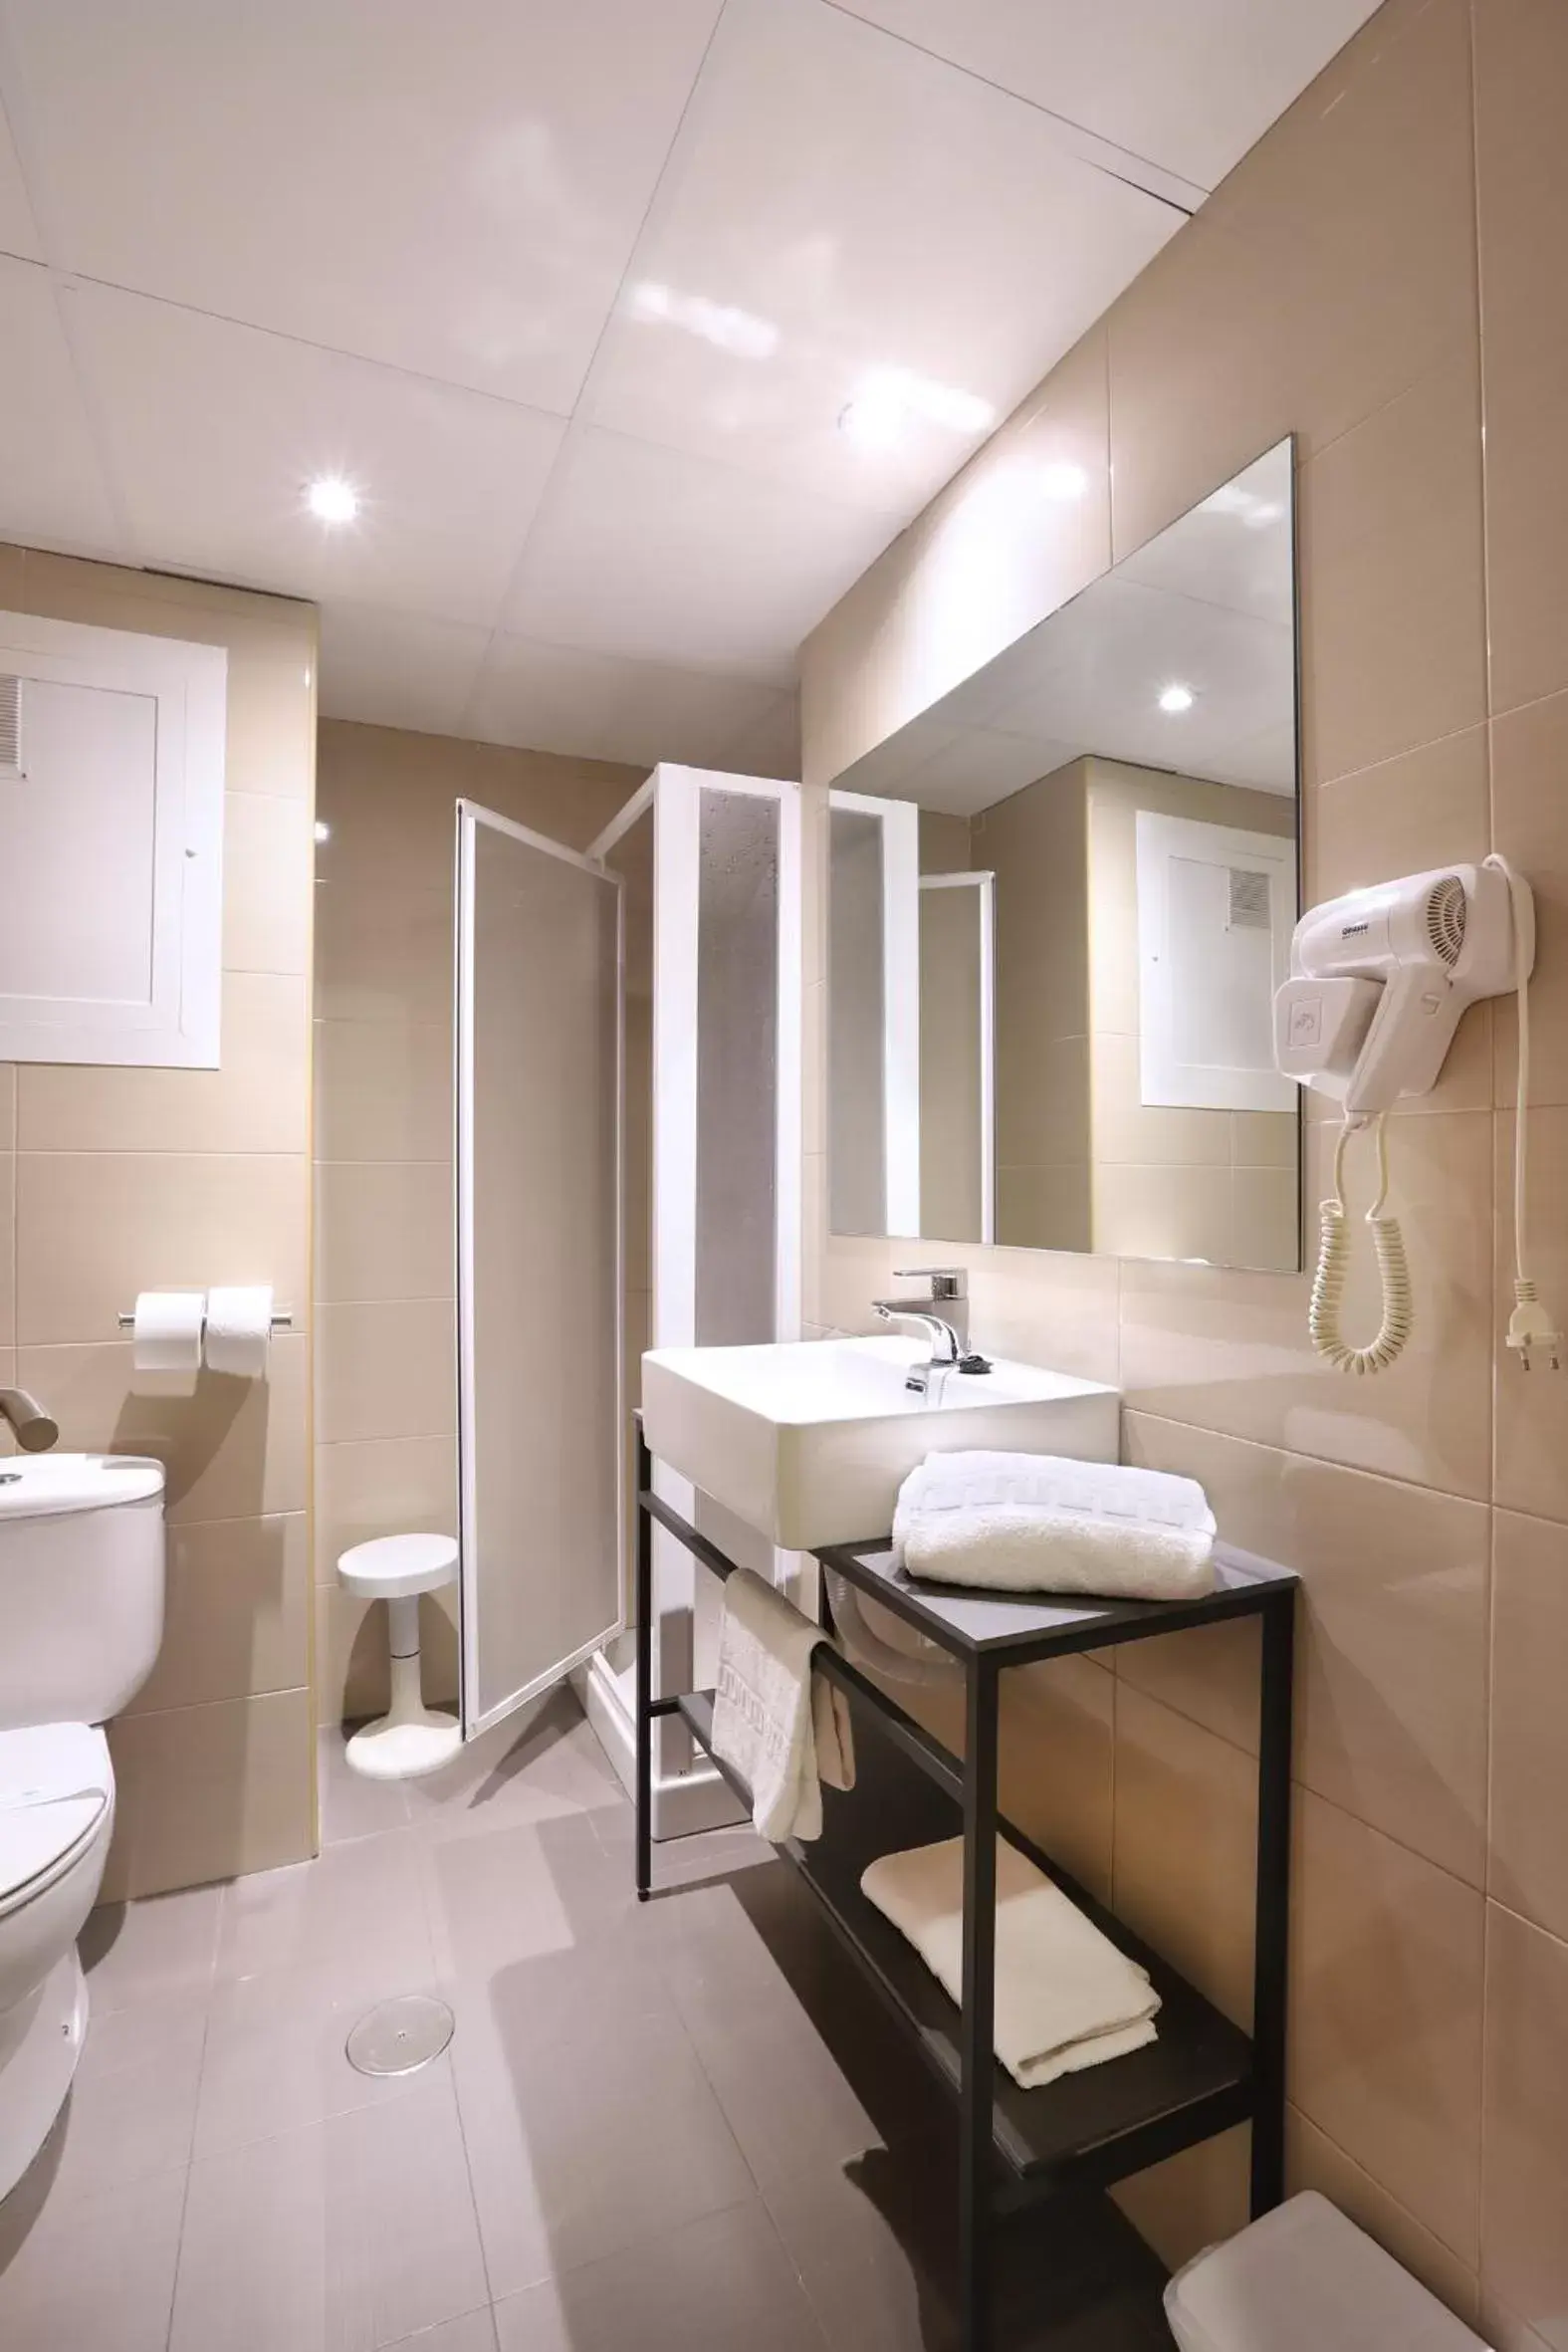 Bathroom in Hotel Brasil